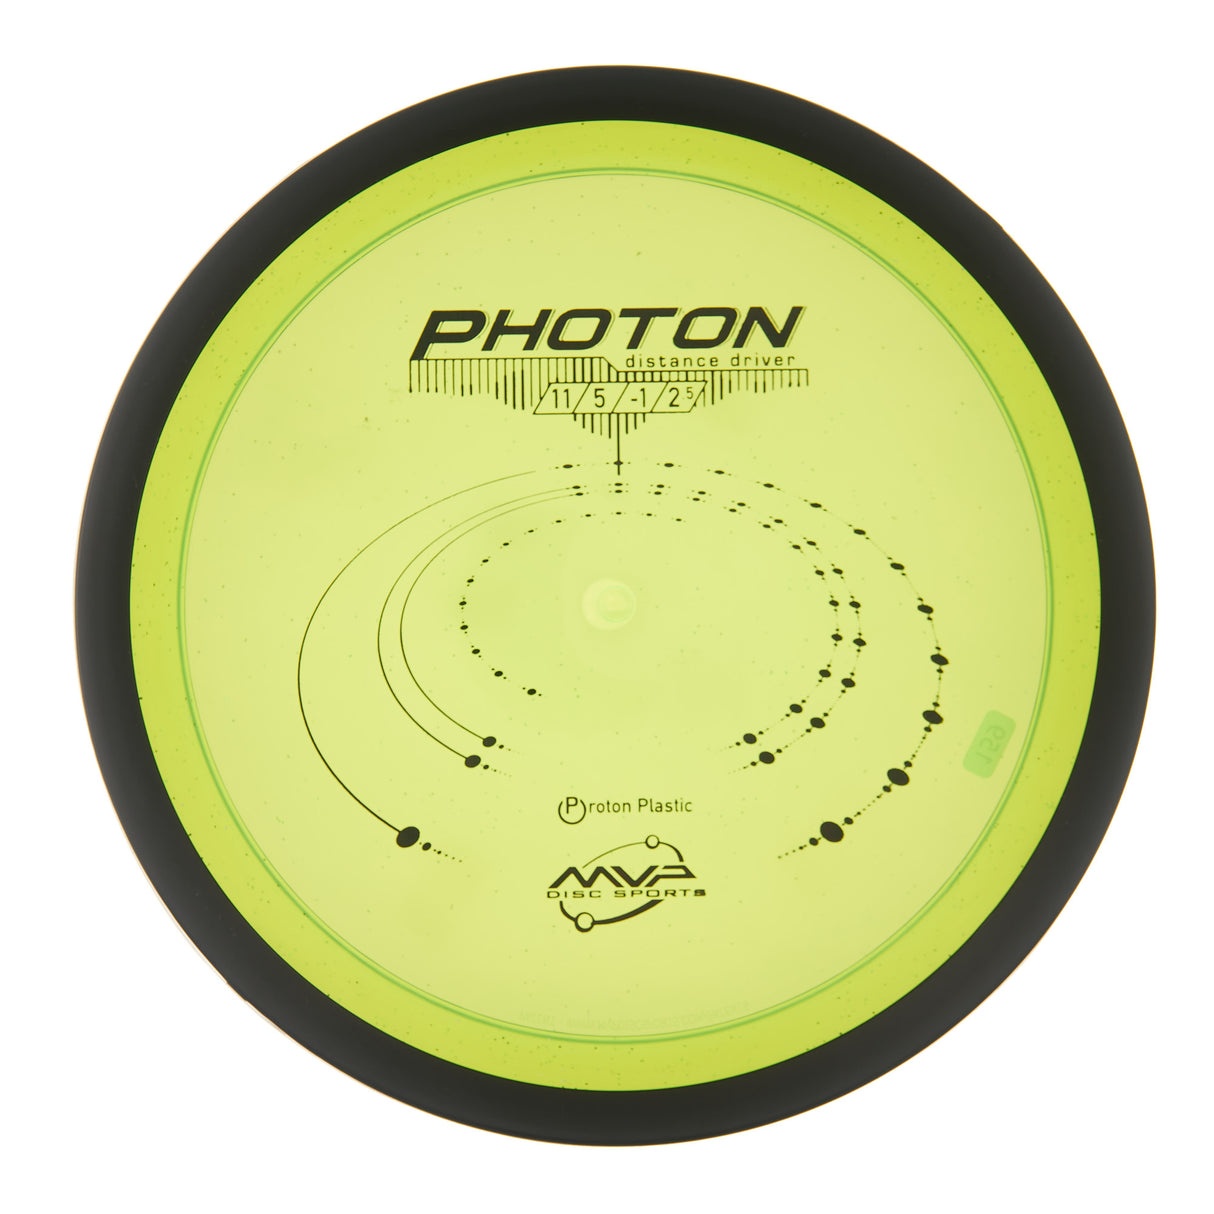 MVP Photon - Proton 161g | Style 0001